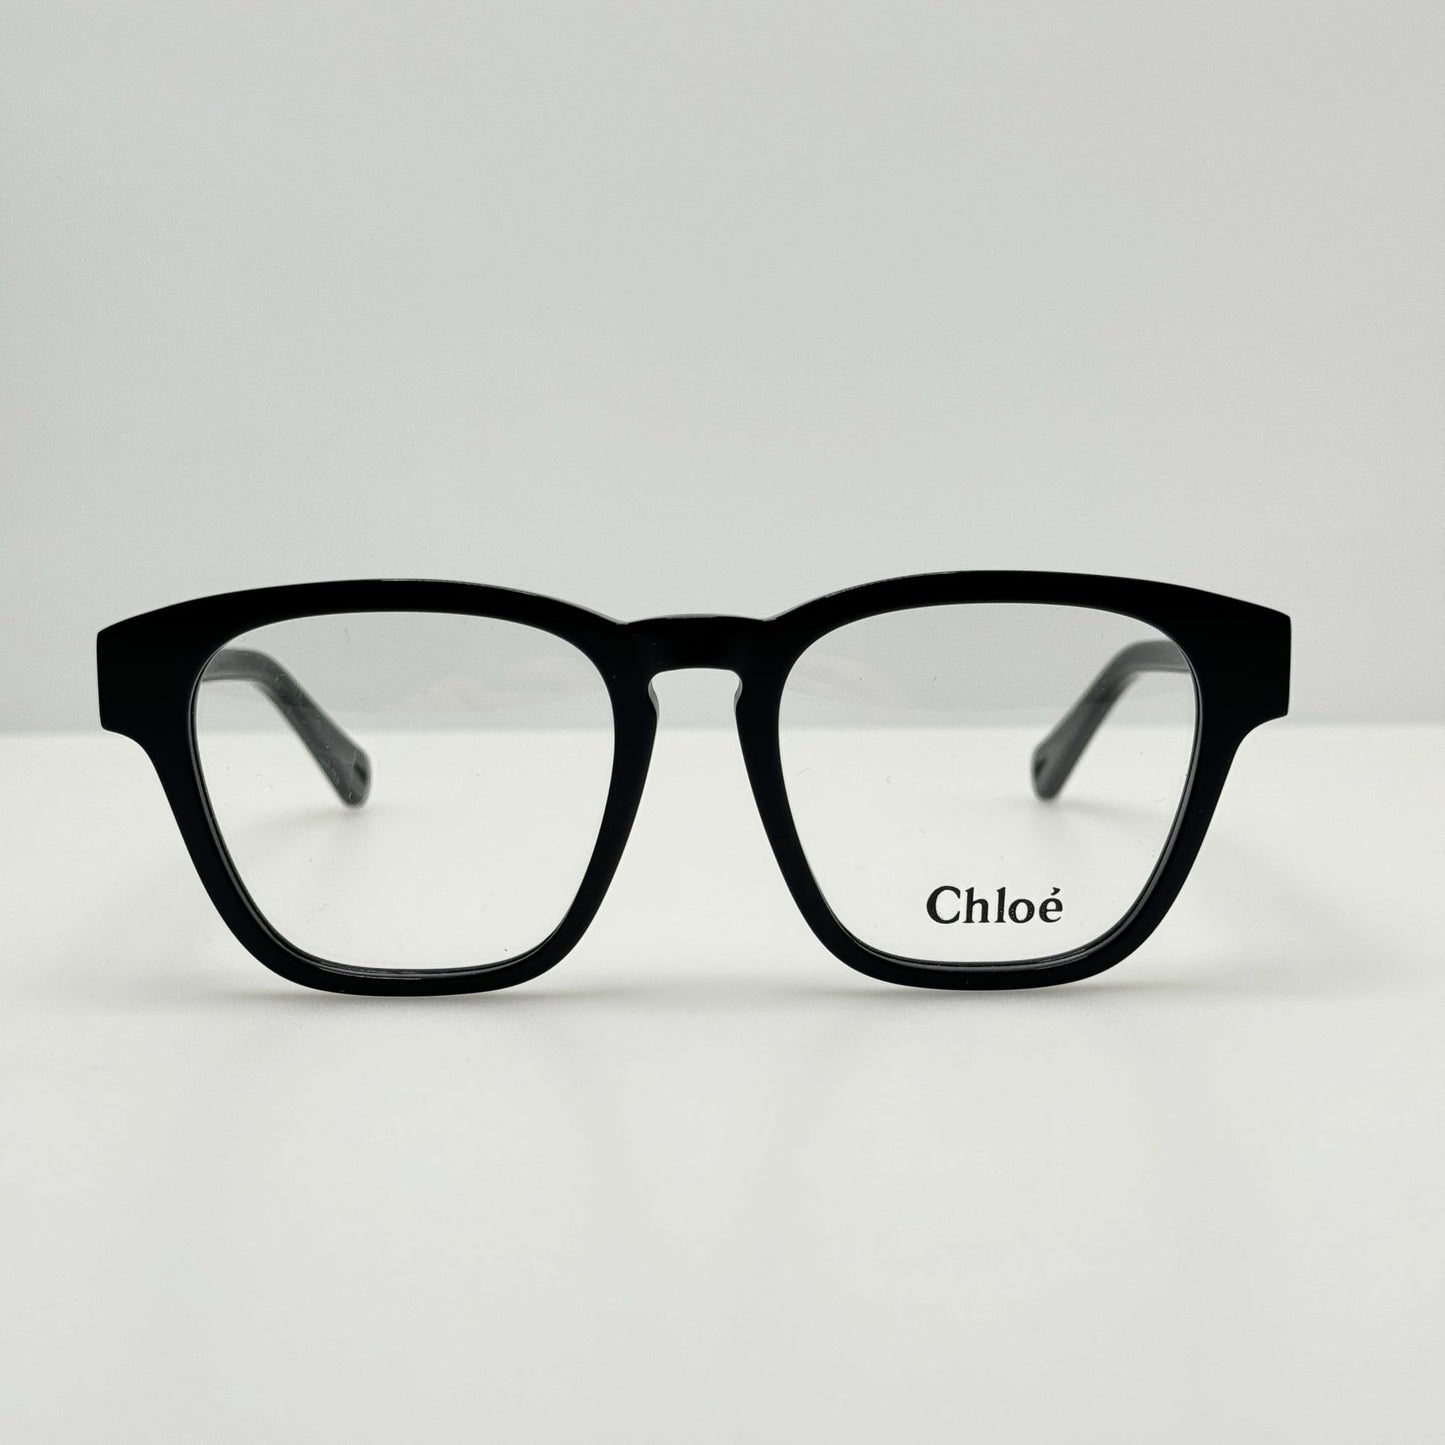 Chloe Eyeglasses Eye Glasses Frames CH0161O 001 51-18-145 Italy